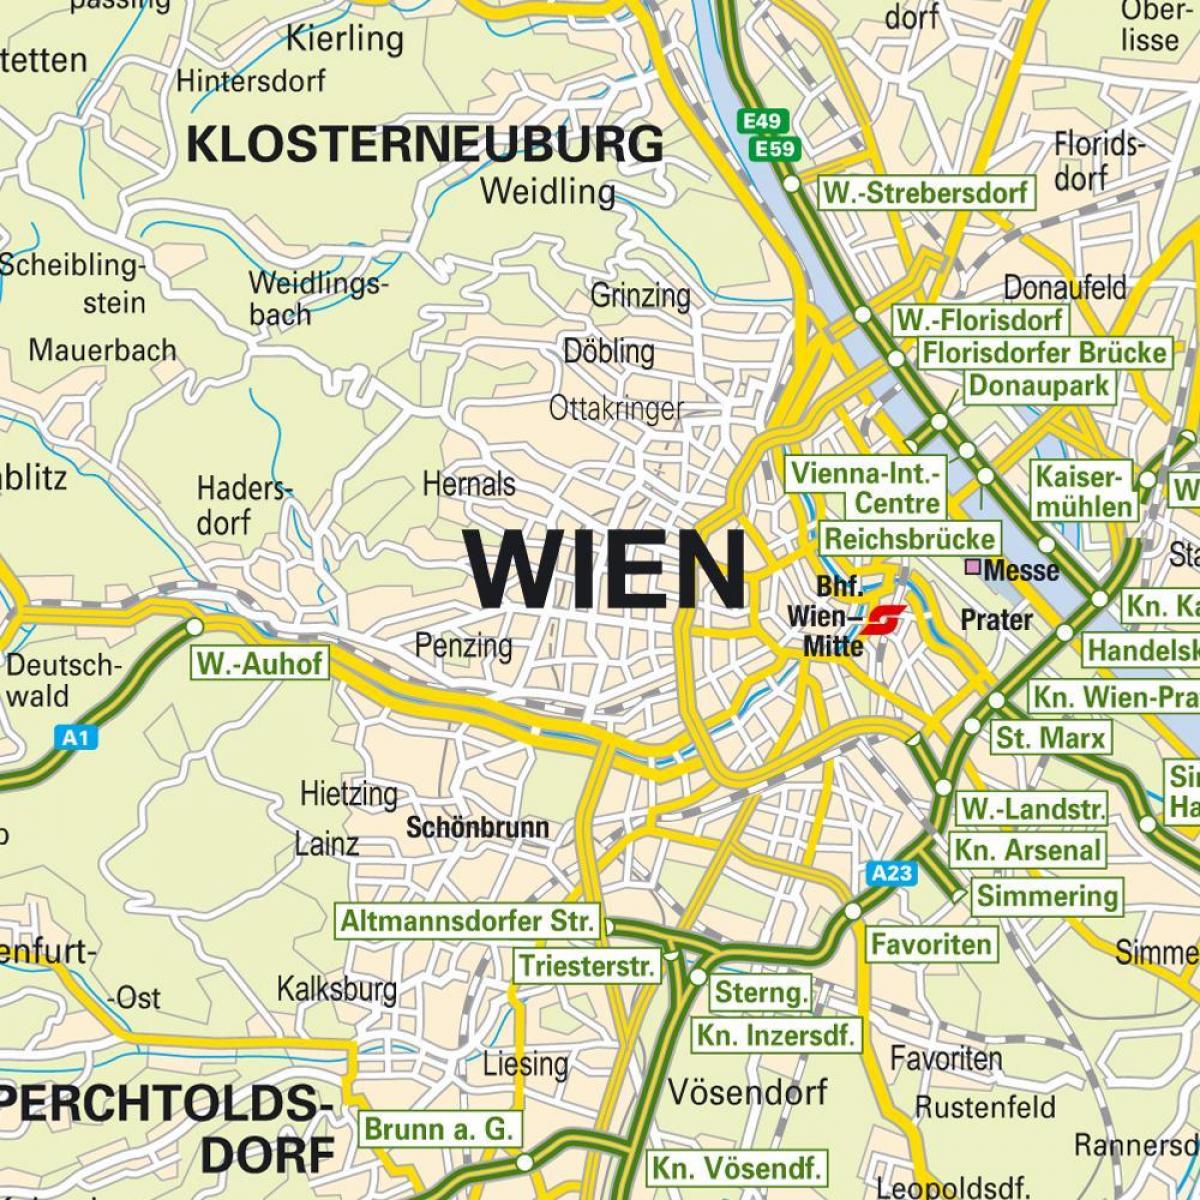 térkép, amely Bécs